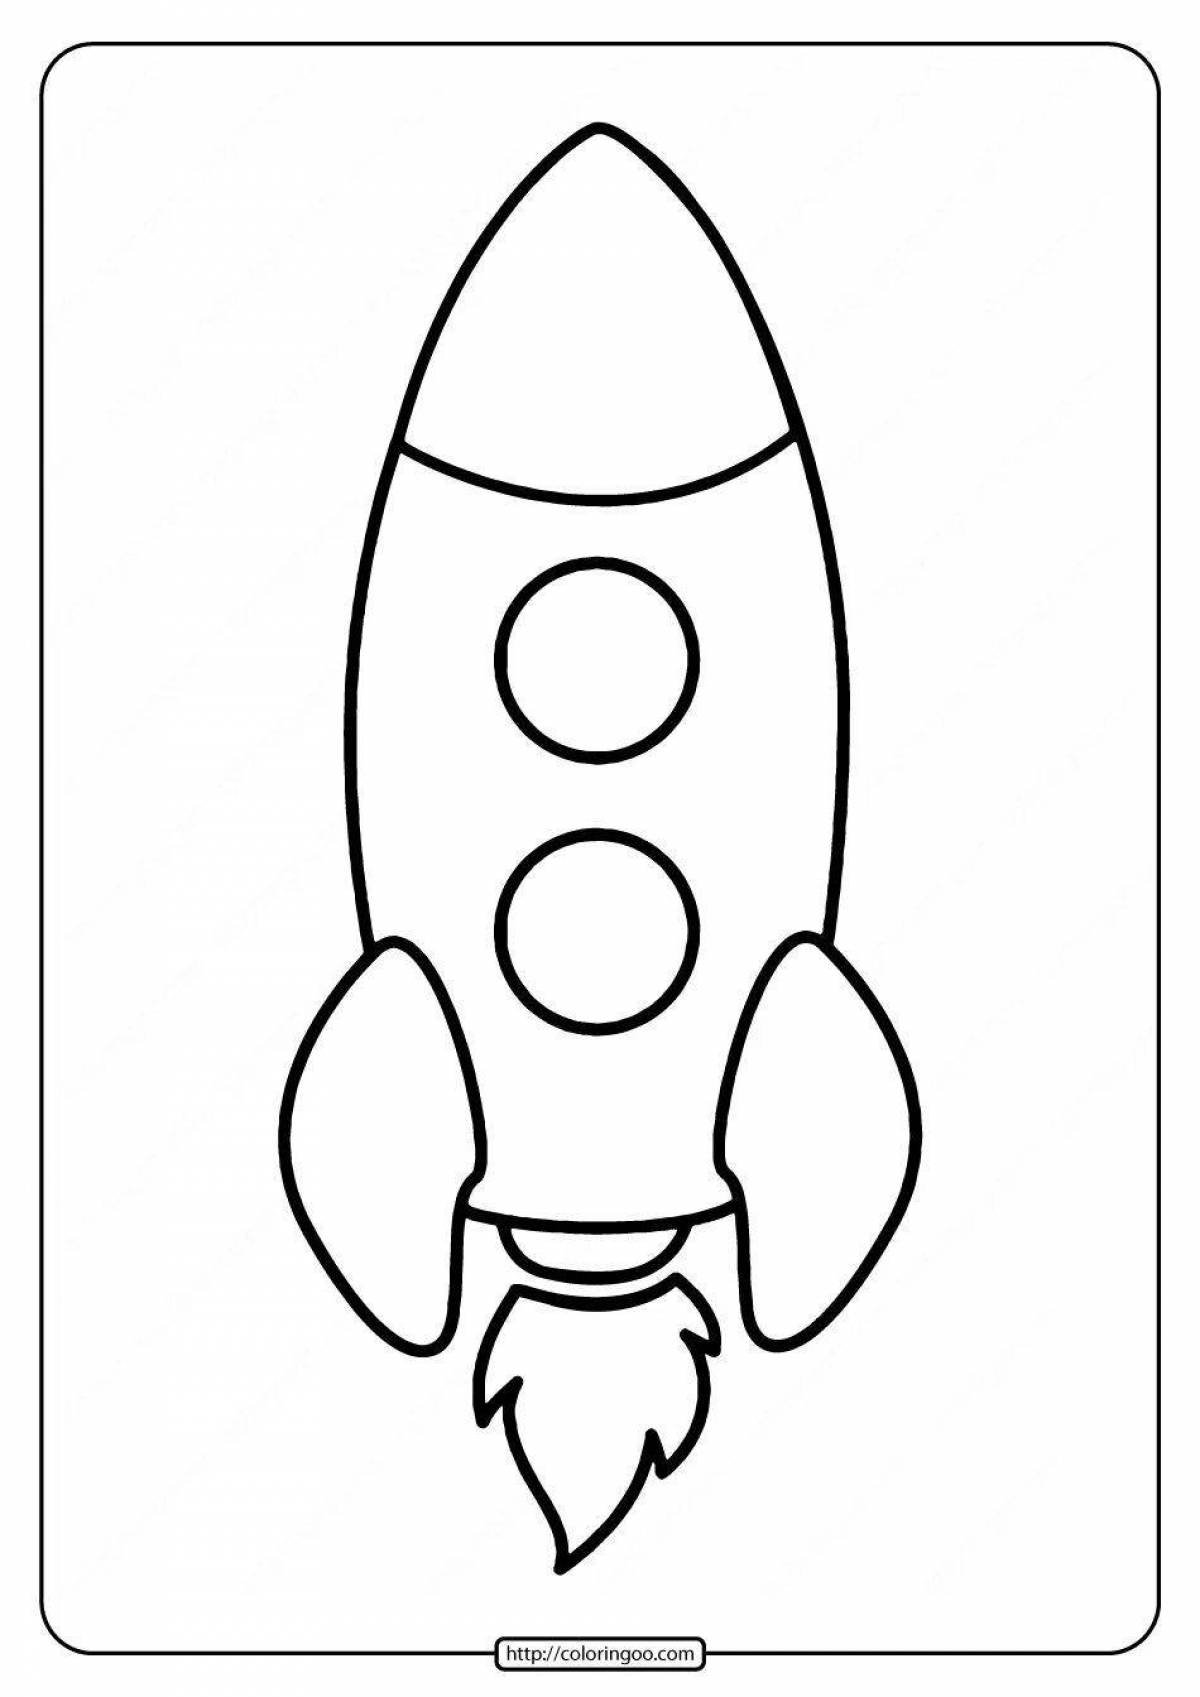 Ракета раскраска. Ракета раскраска для малышей. Раскраска ракета в космосе для детей. Ракета трафарет для детей.